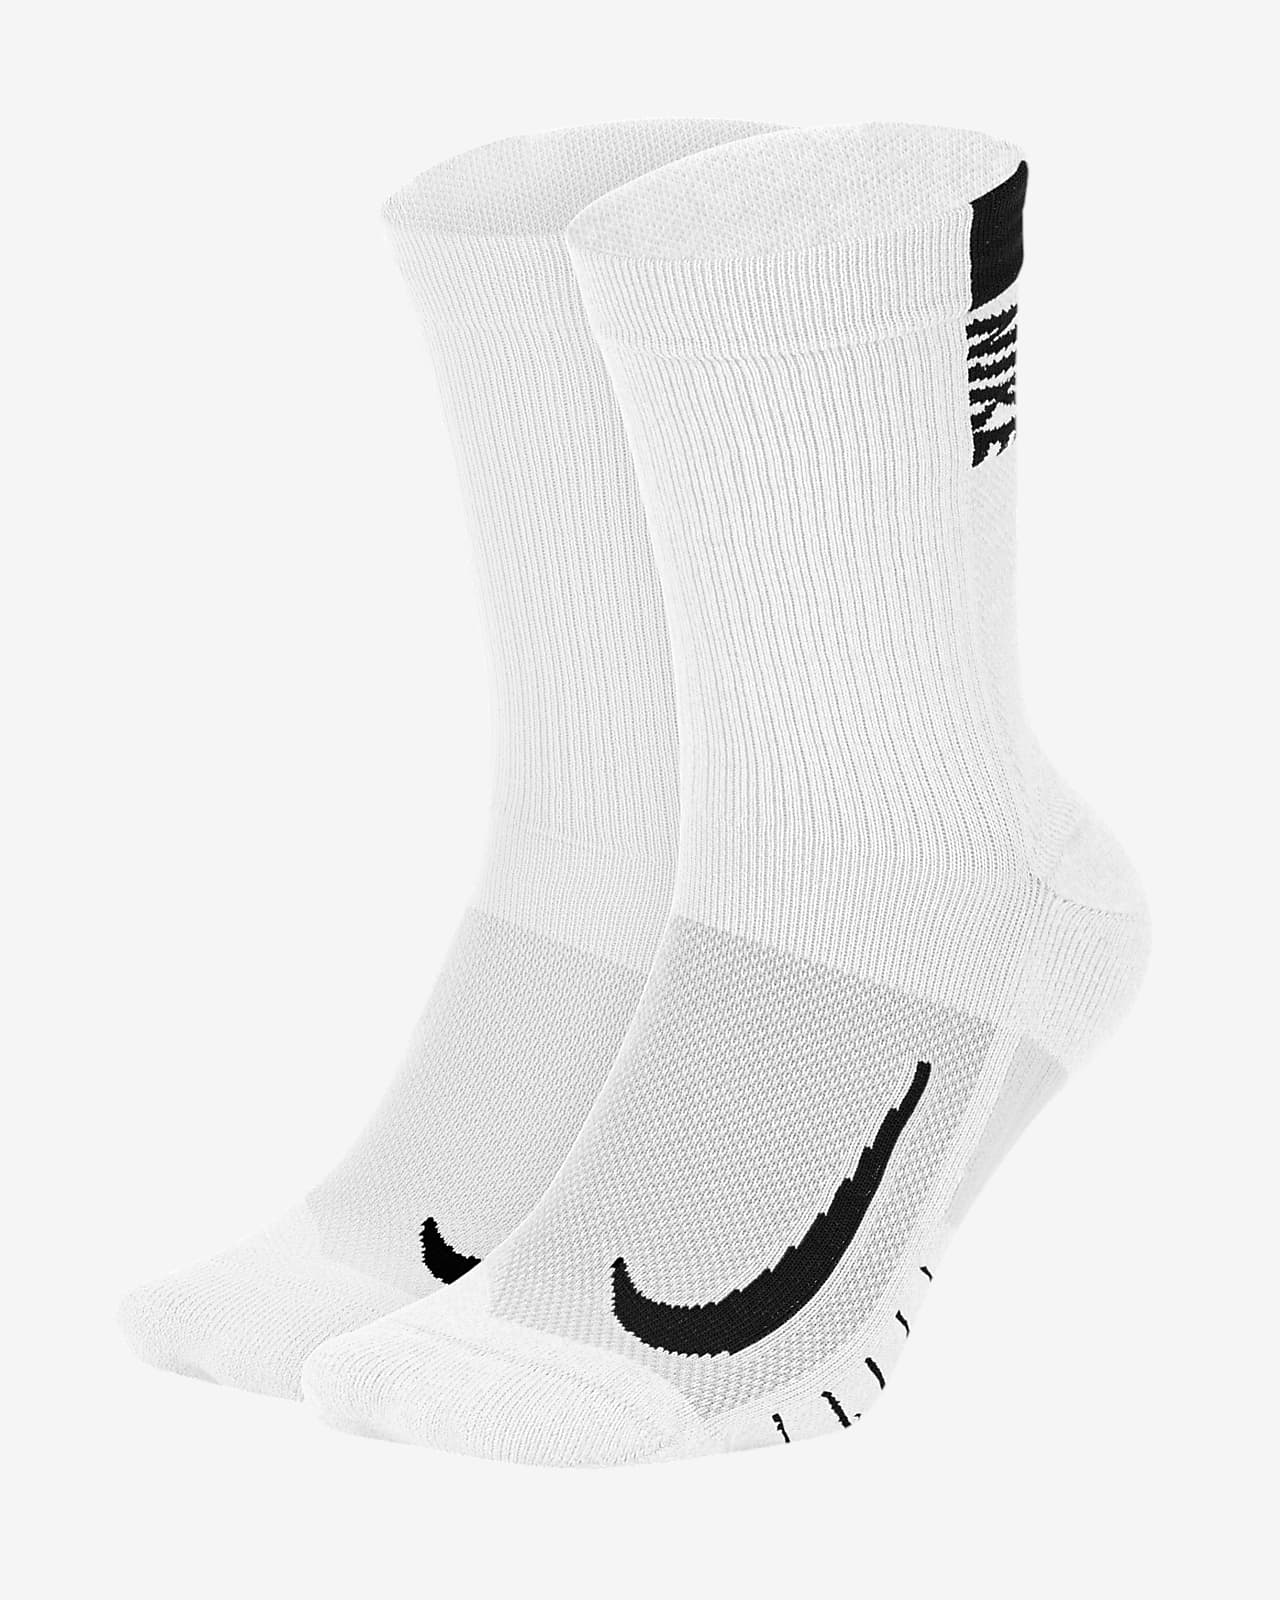 Vyšší ponožky Nike Multiplier (2 páry)